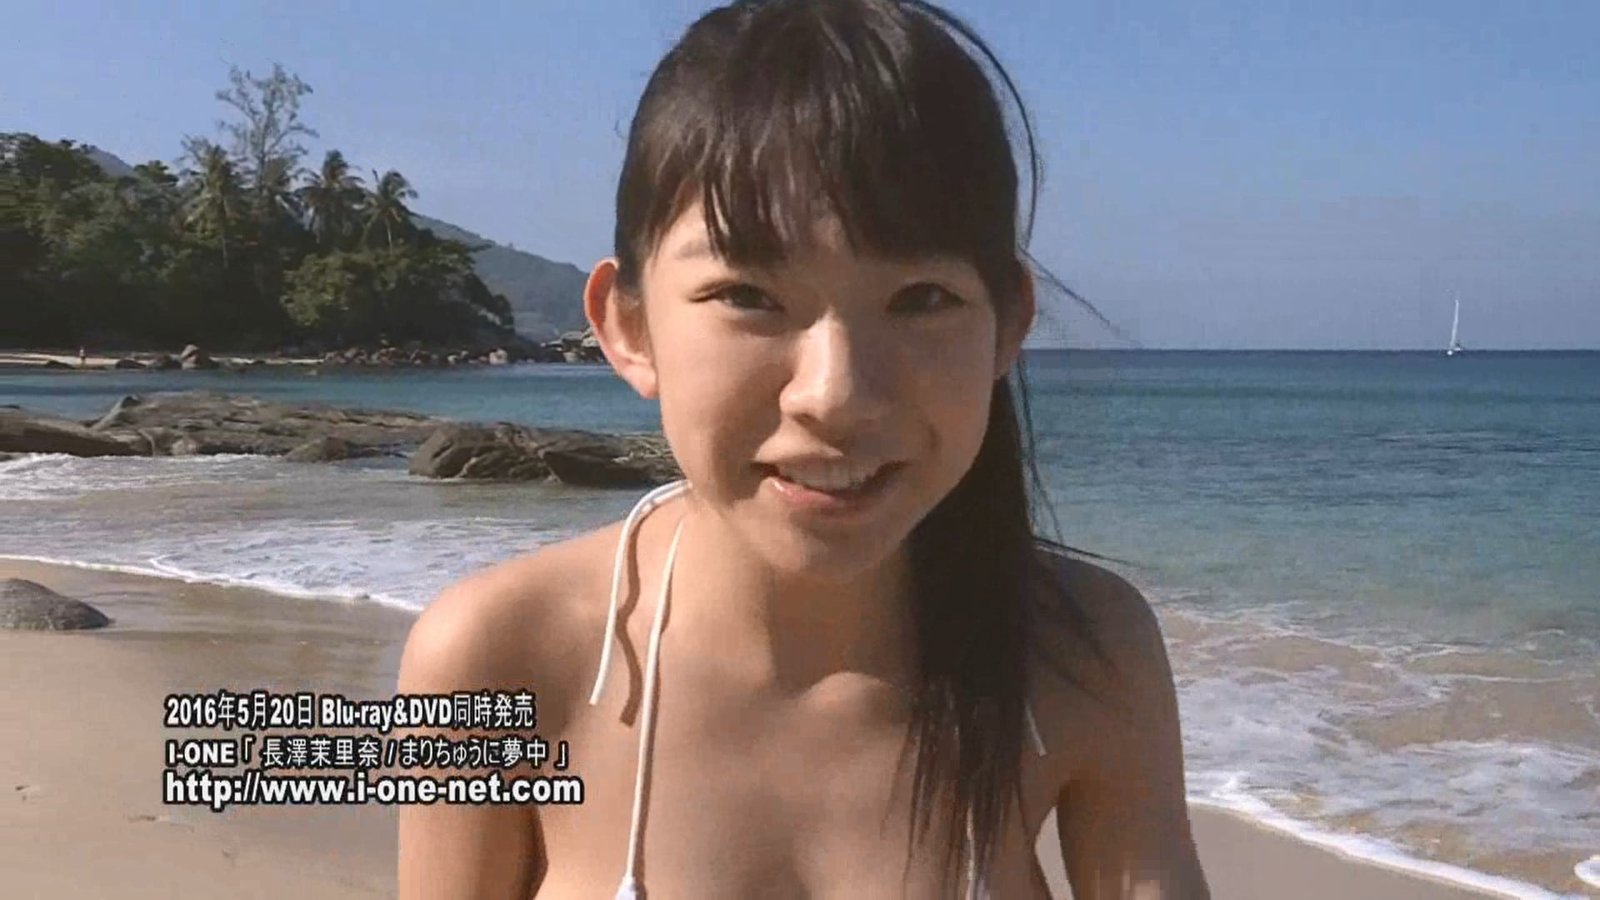 長澤茉里奈のイメージビデオ「まりちゅうに夢中」キャプチャ画像